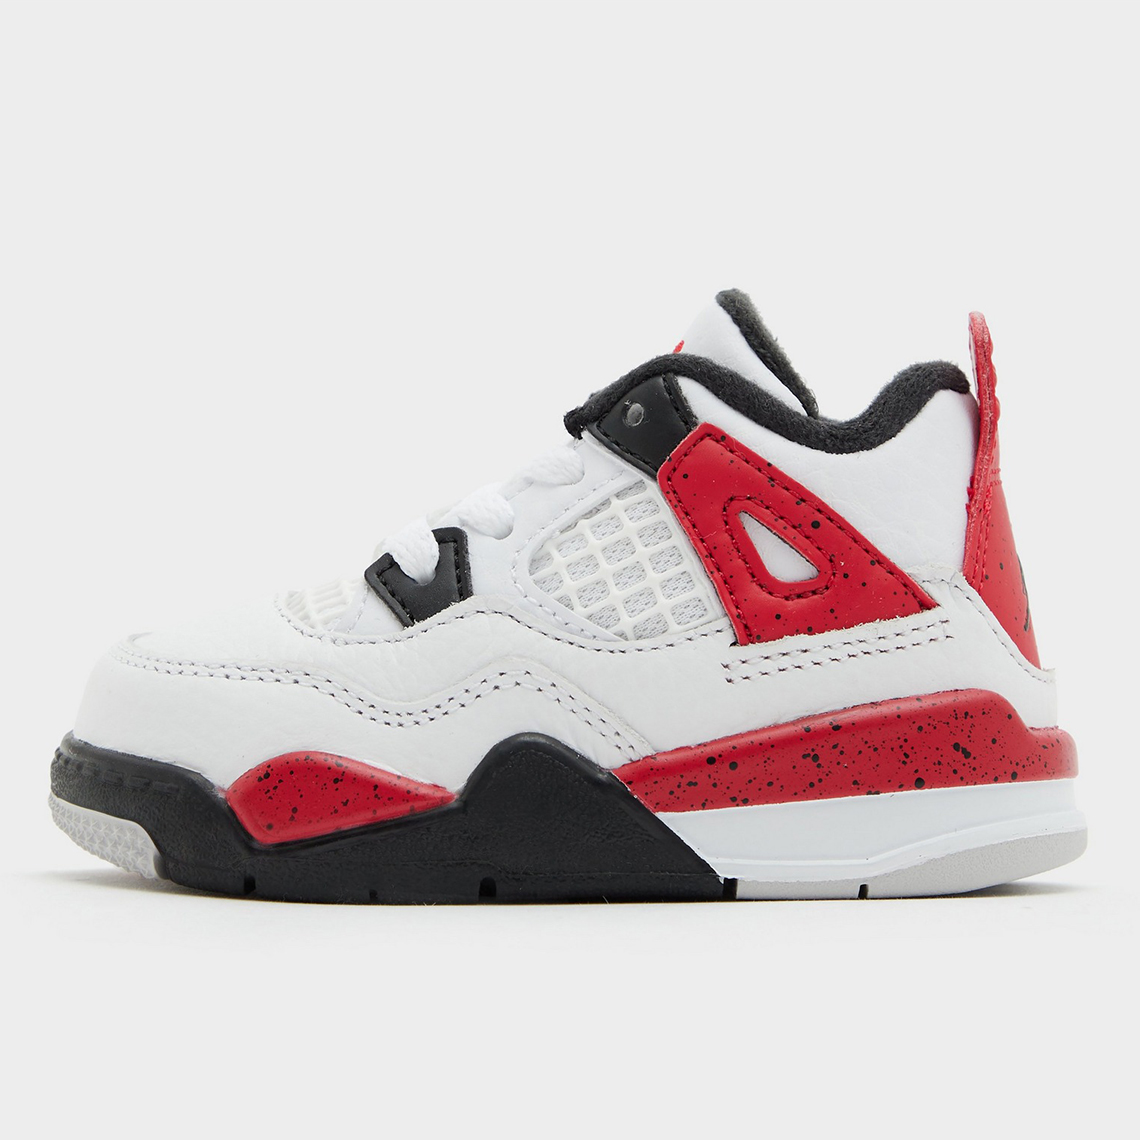 Air Jordan 4 Red Cement: características y precio de los tenis